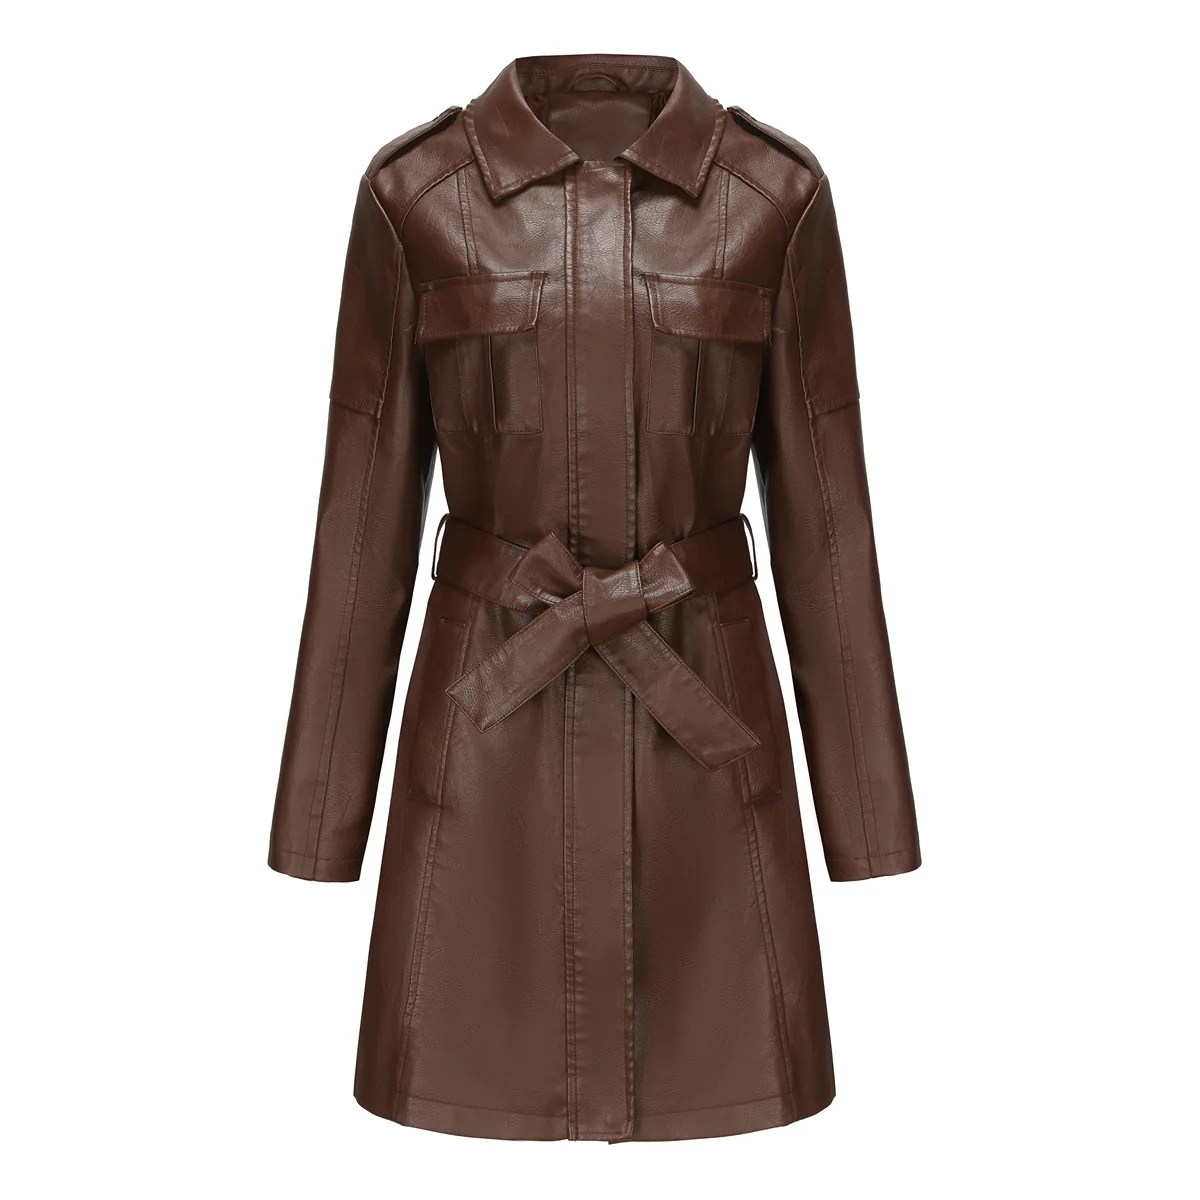 Kış Yeni Katı Renk Casual Vintage PU Faux Deri Trençkot Rüzgarlık Kadın Sonbahar Kış Moda Fermuar Uzun Ceketler